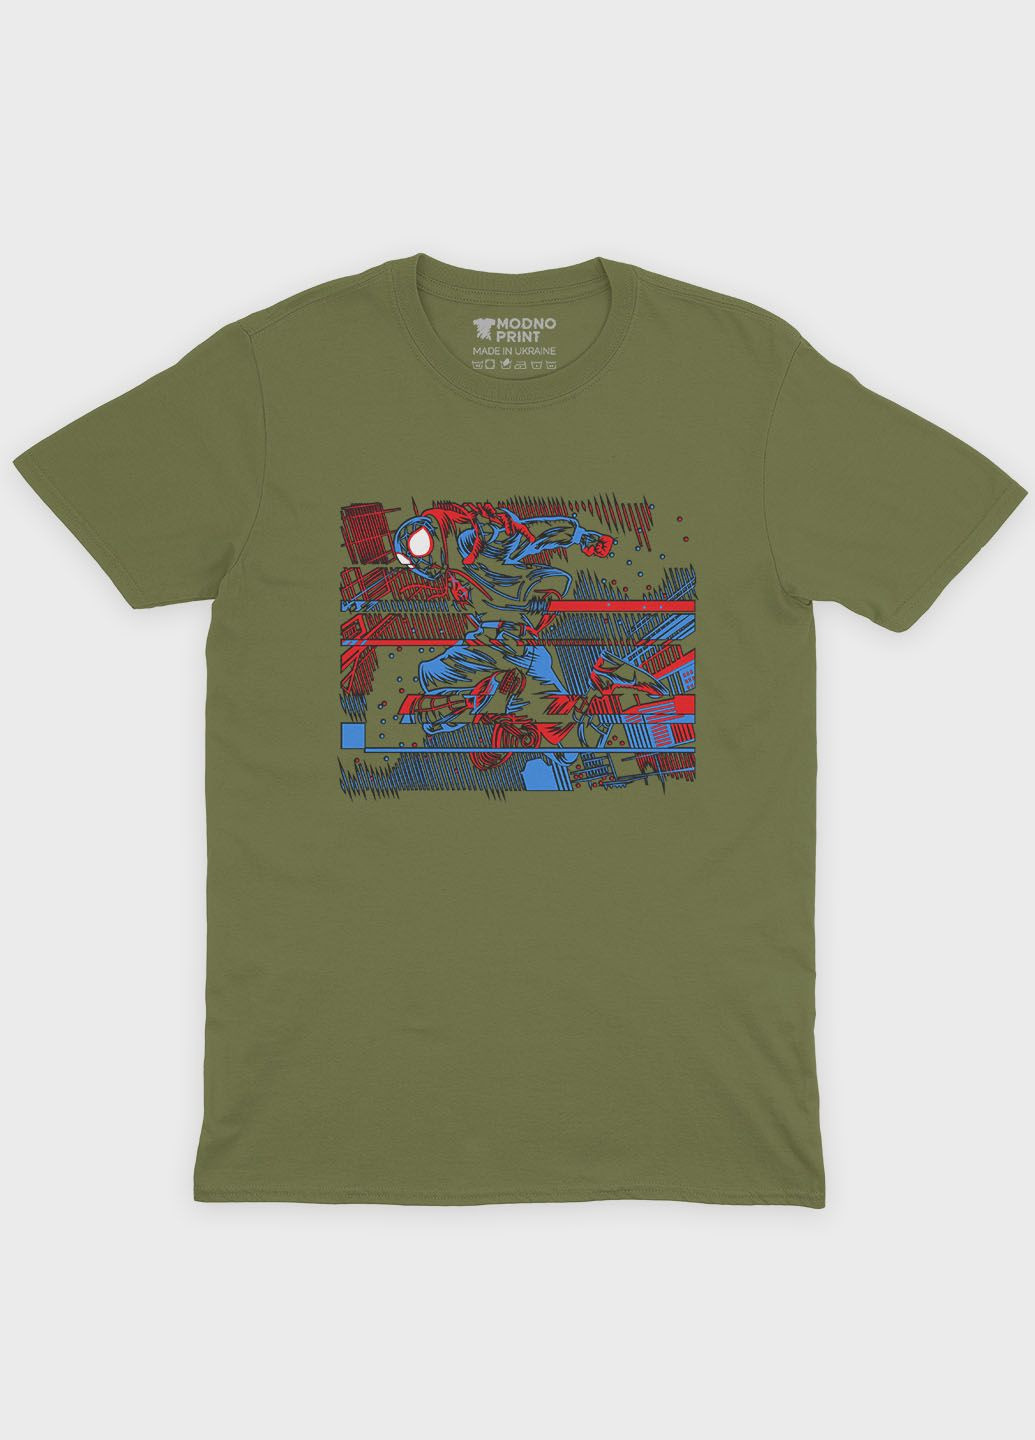 Хаки (оливковая) мужская футболка с принтом супергероя - человек-паук (ts001-1-hgr-006-014-024) Modno